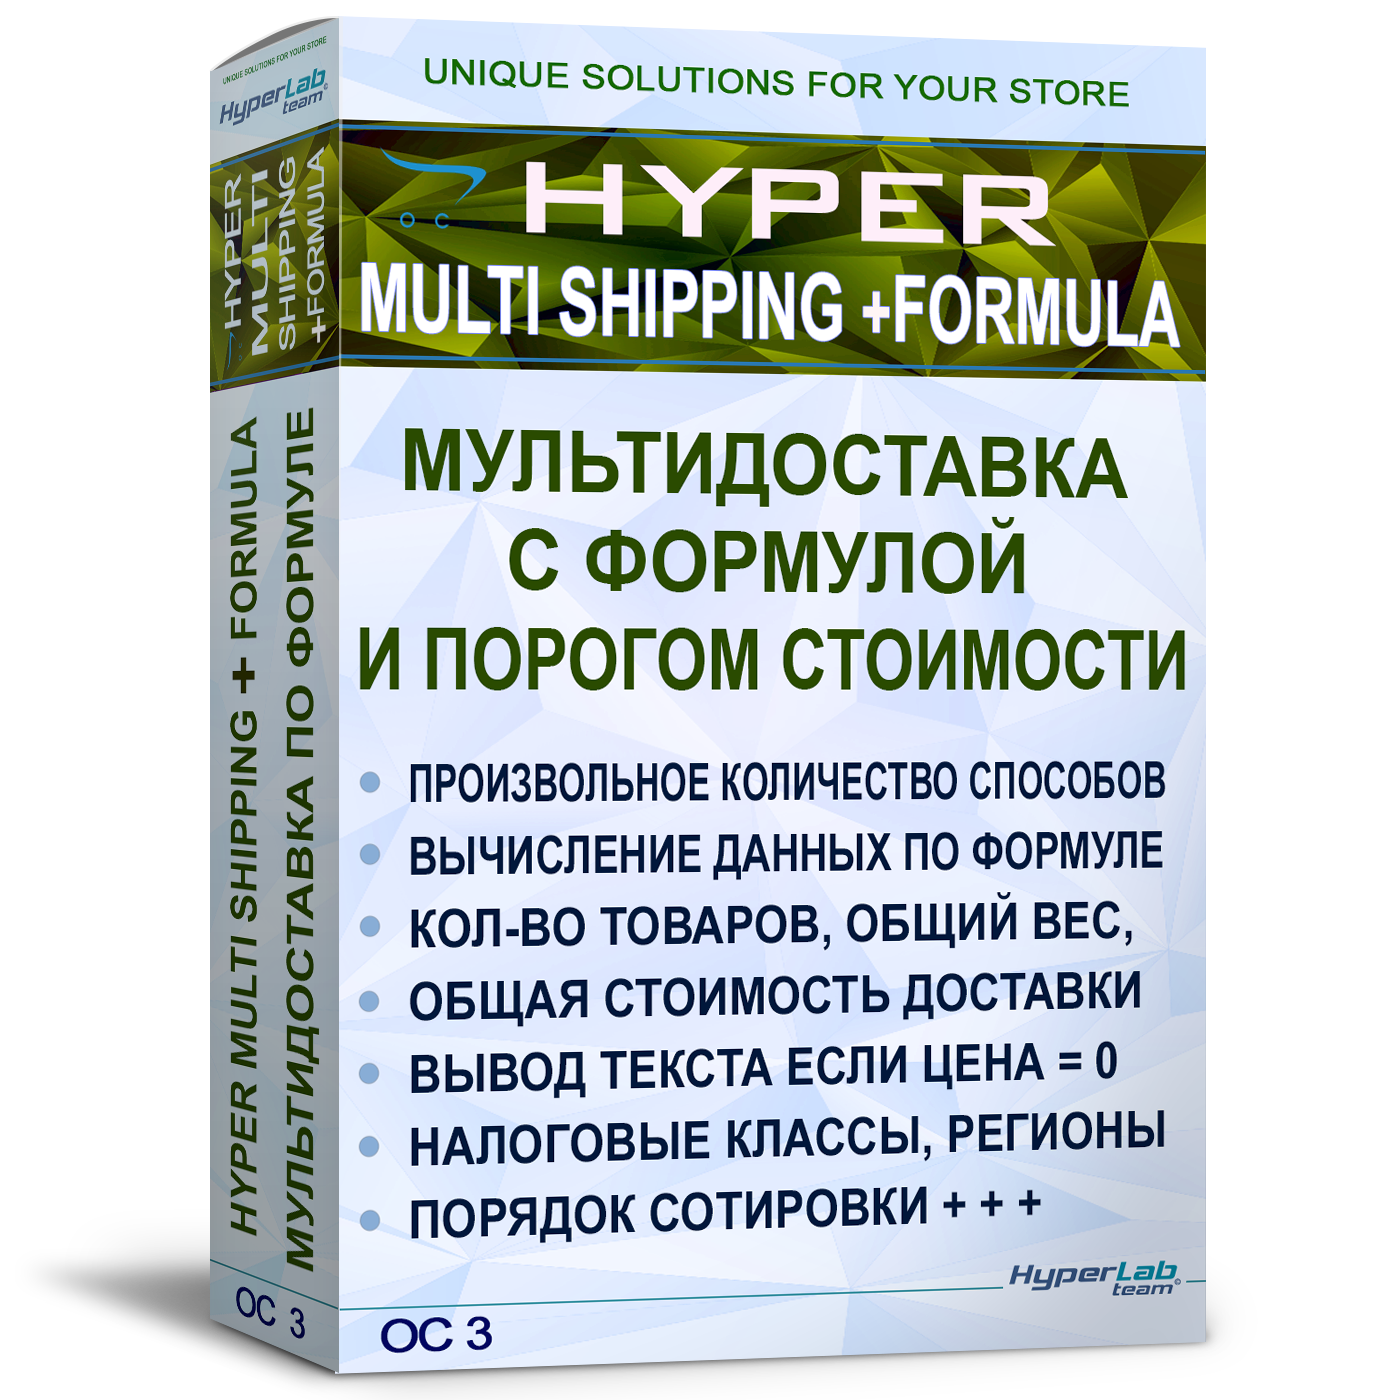 [OC3] Мультидоставка с формулой и порогом стоимости - Multi shipping +formula